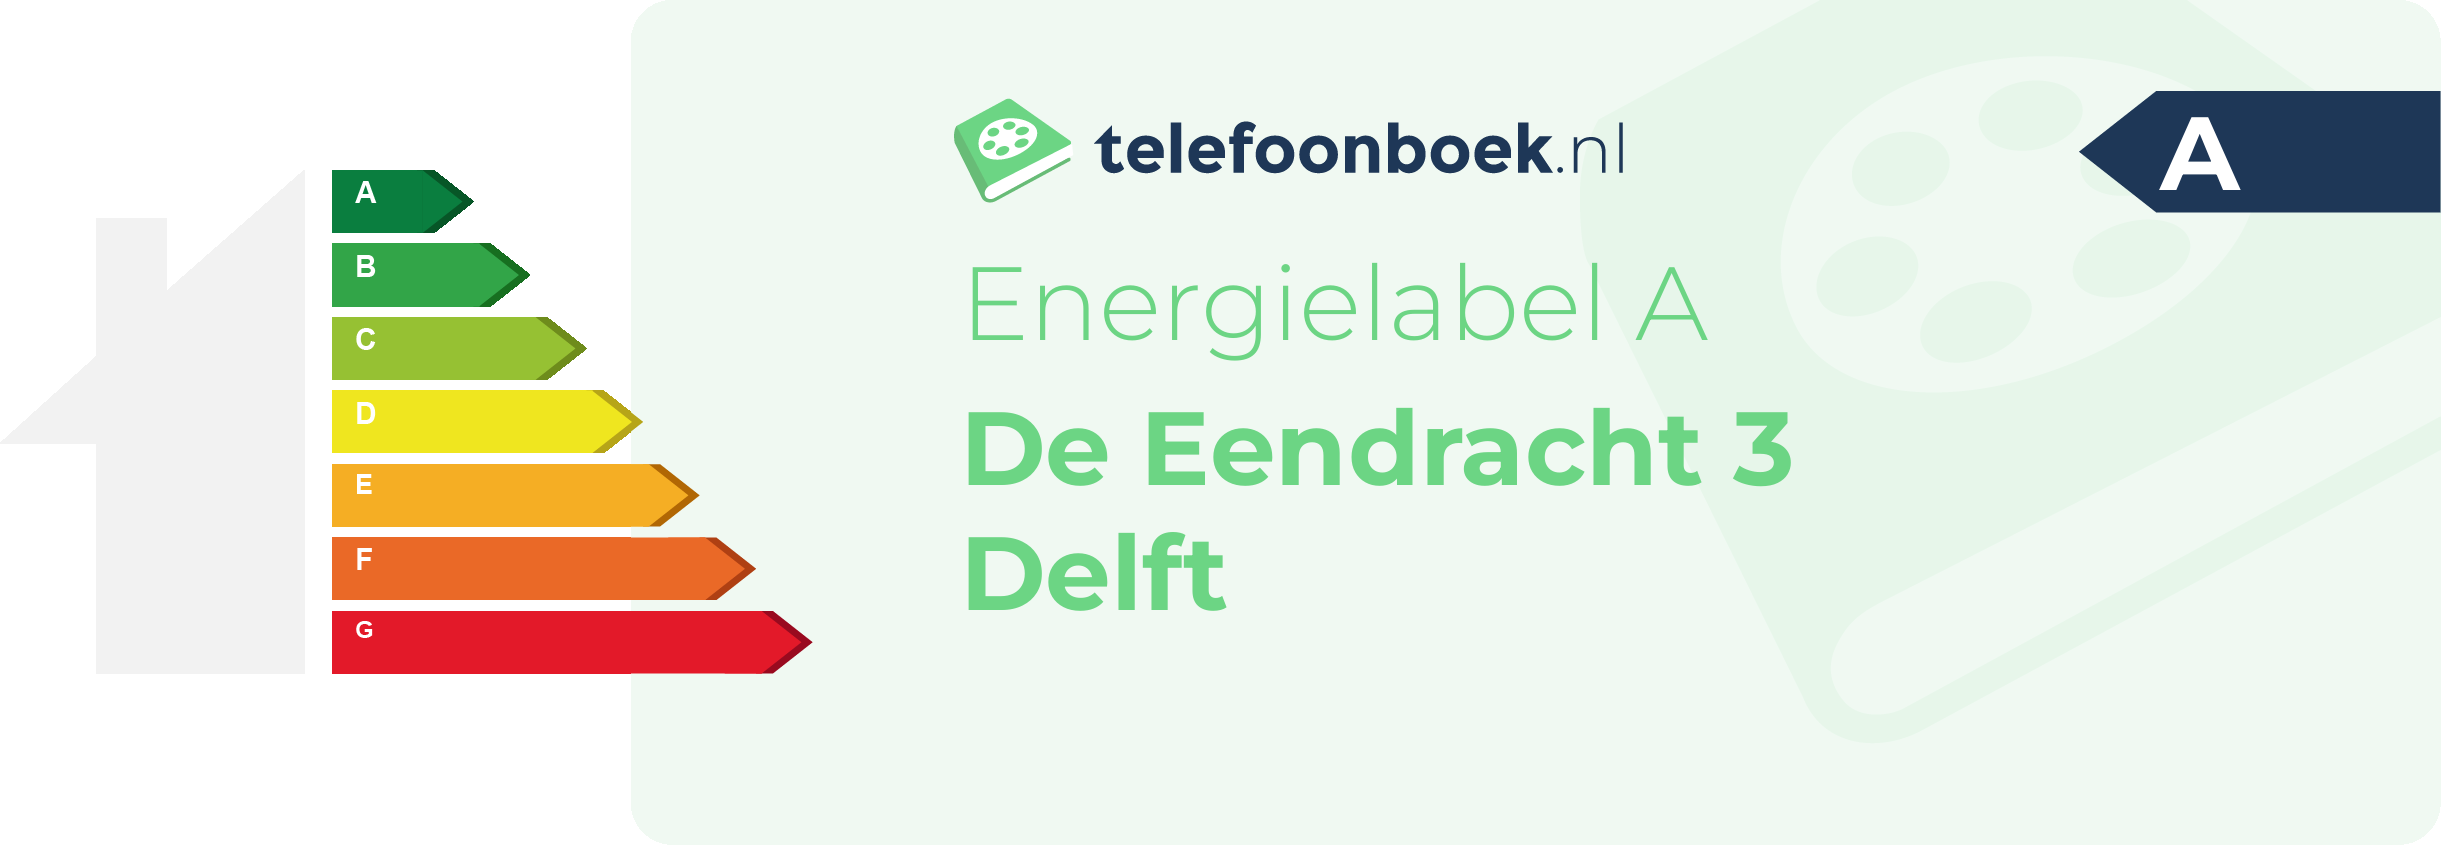 Energielabel De Eendracht 3 Delft